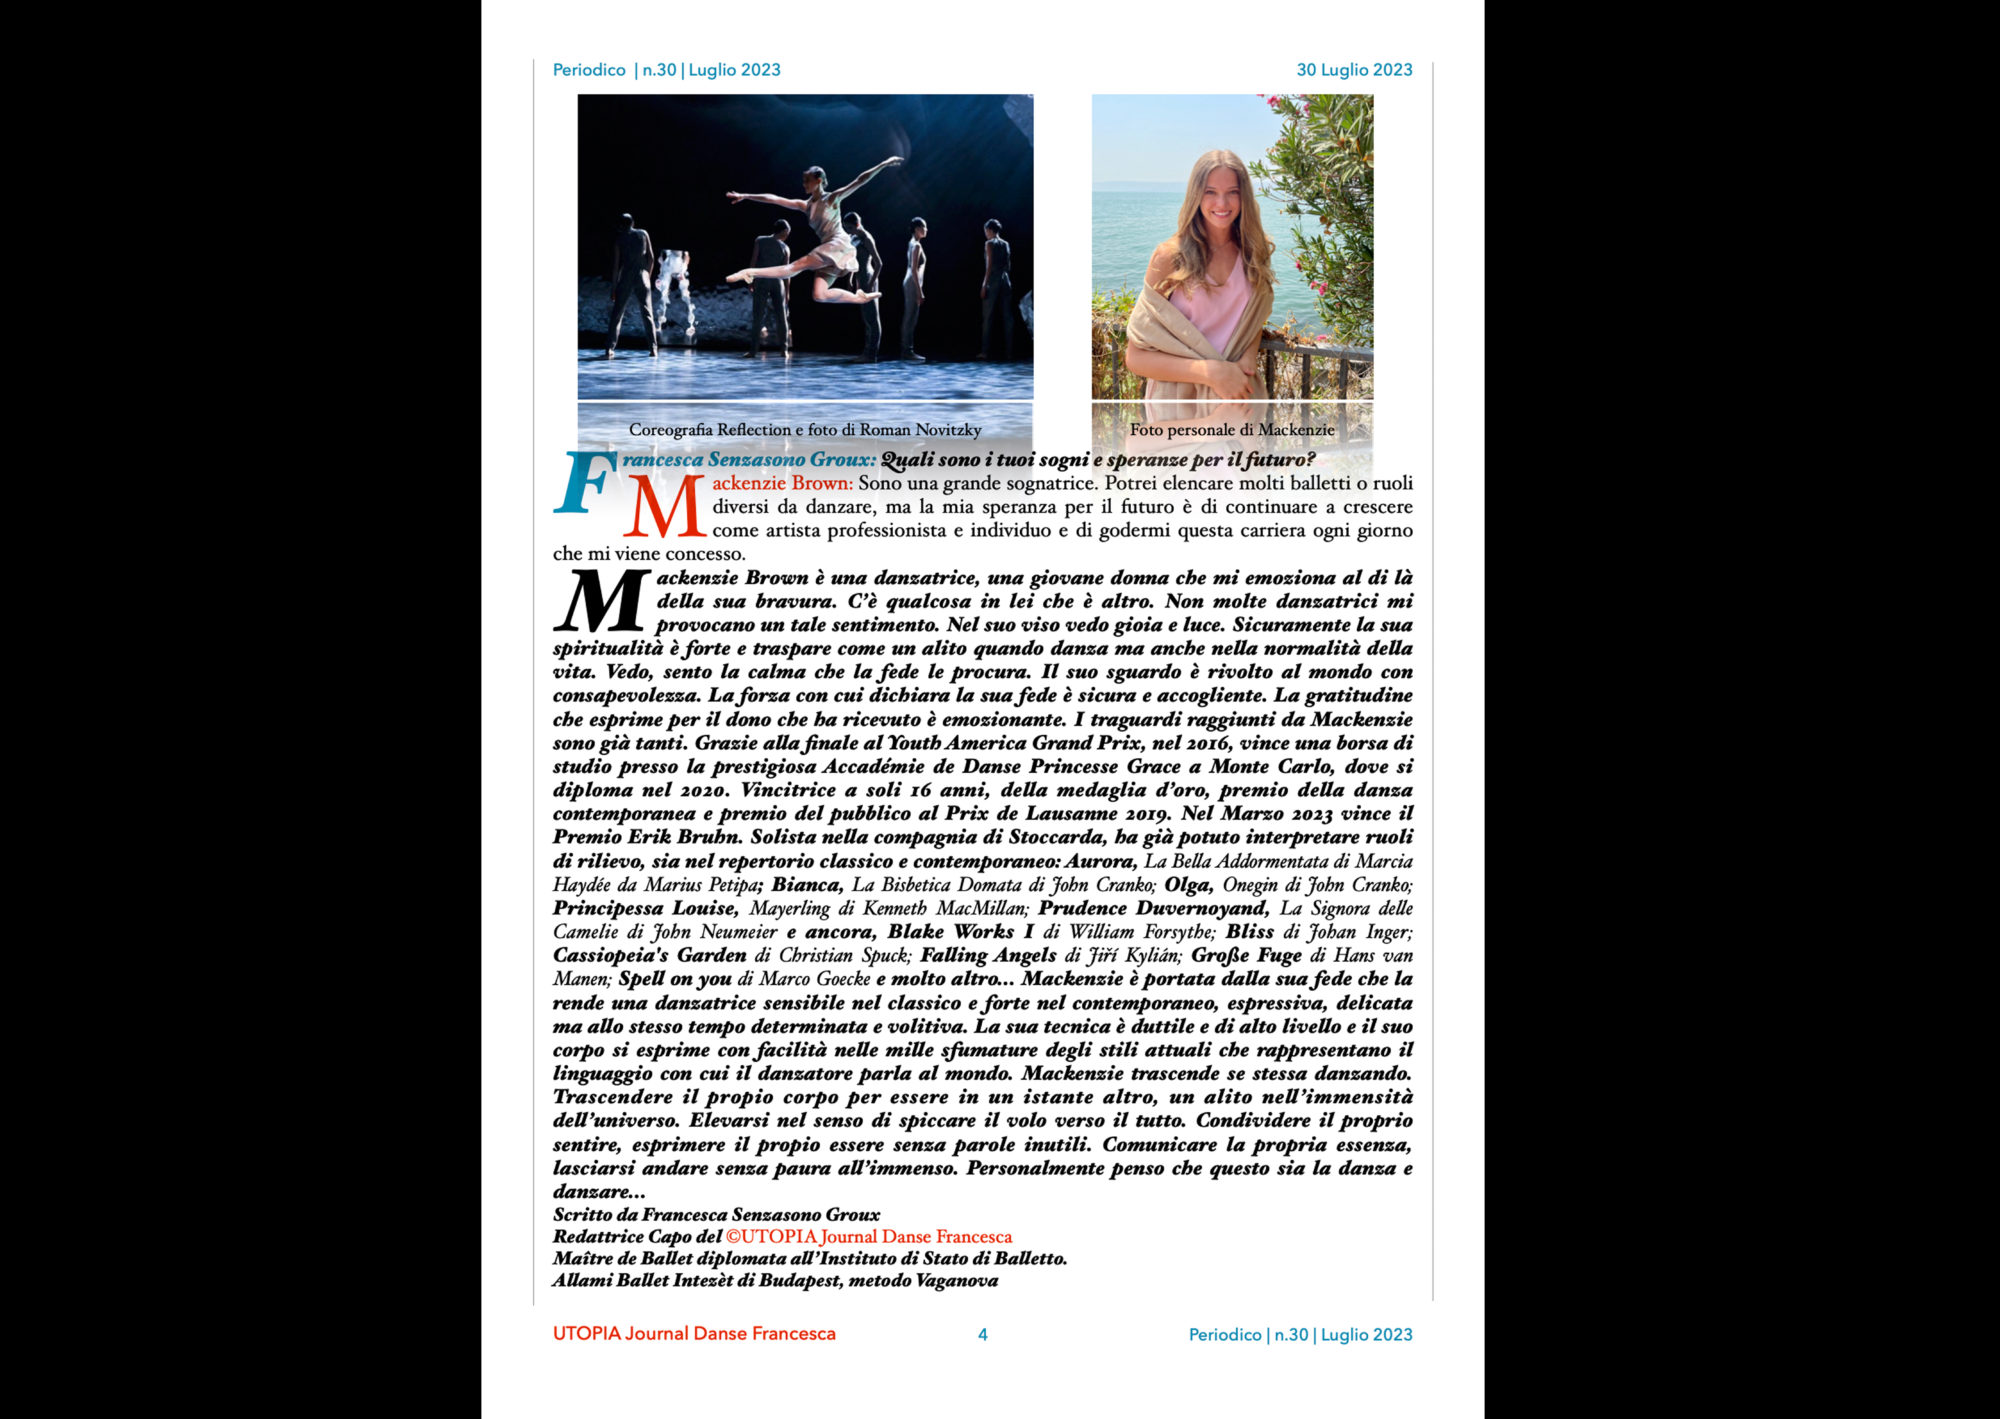 ©UTOPIA Journal Danse Francesca Periodico n.30 30 Luglio 2023 pagina 4